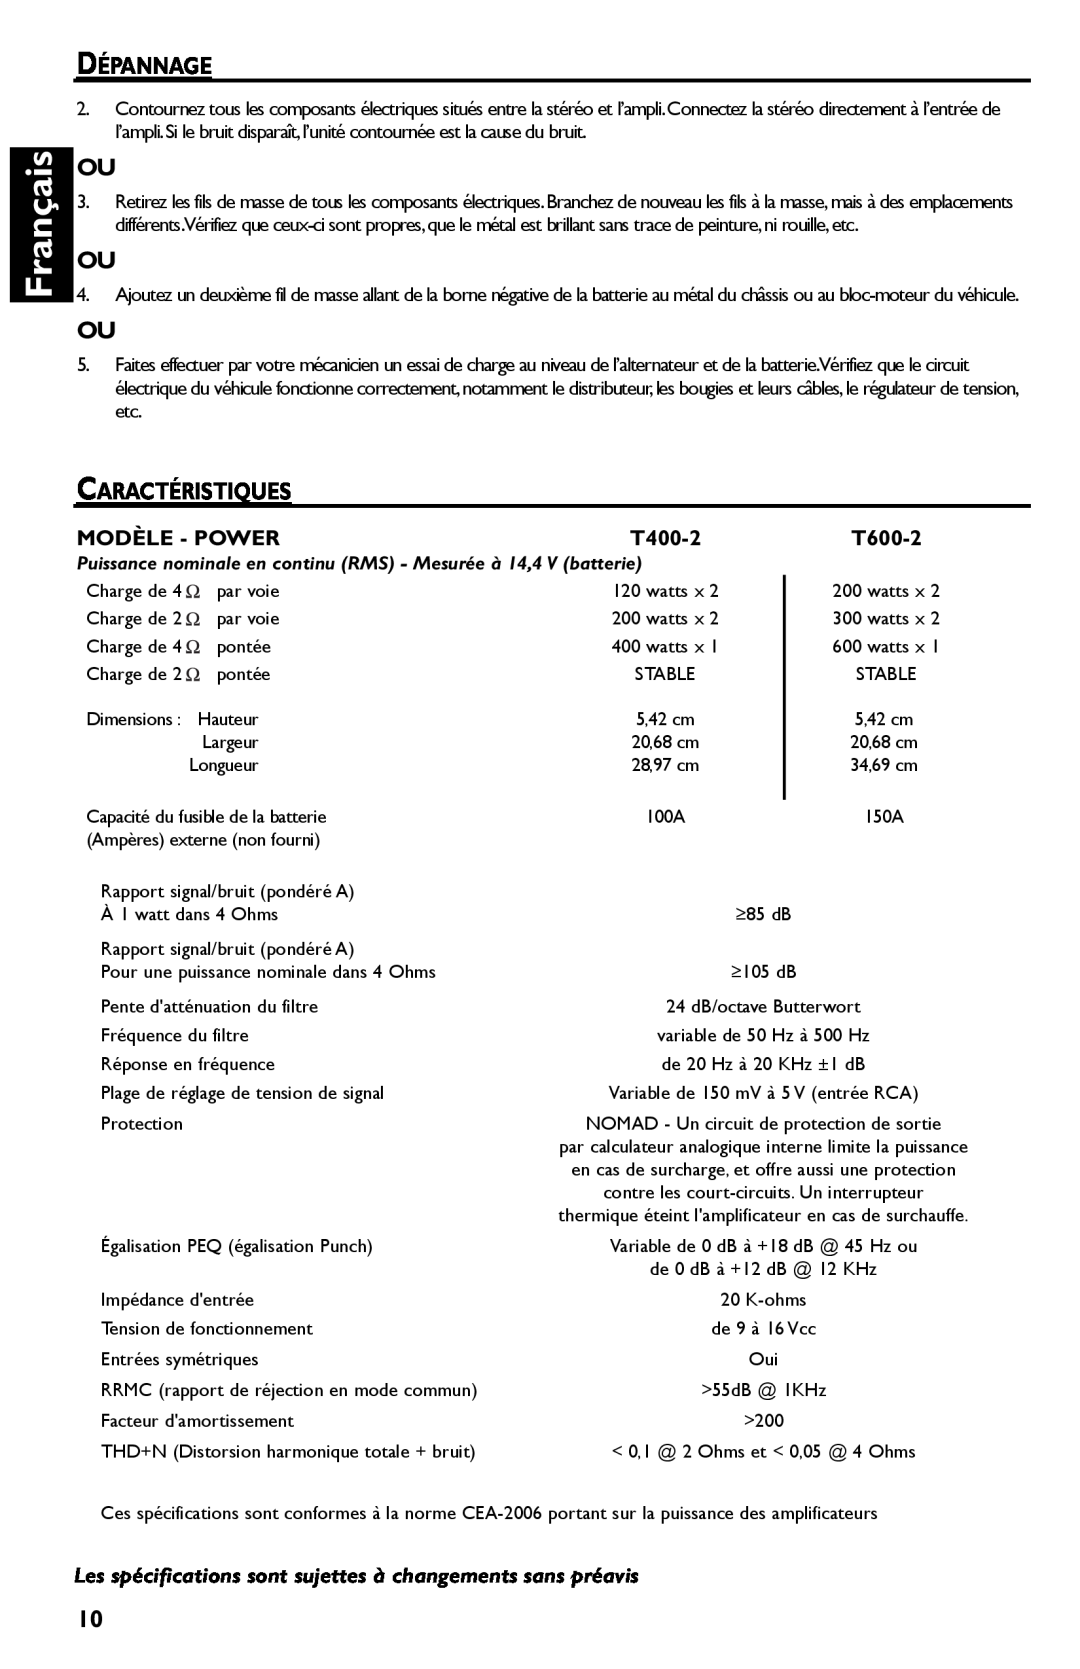 Rockford Fosgate T600-2 manual Français, Dépannage, Caractéristiques, Modèle - Power, T400-2 